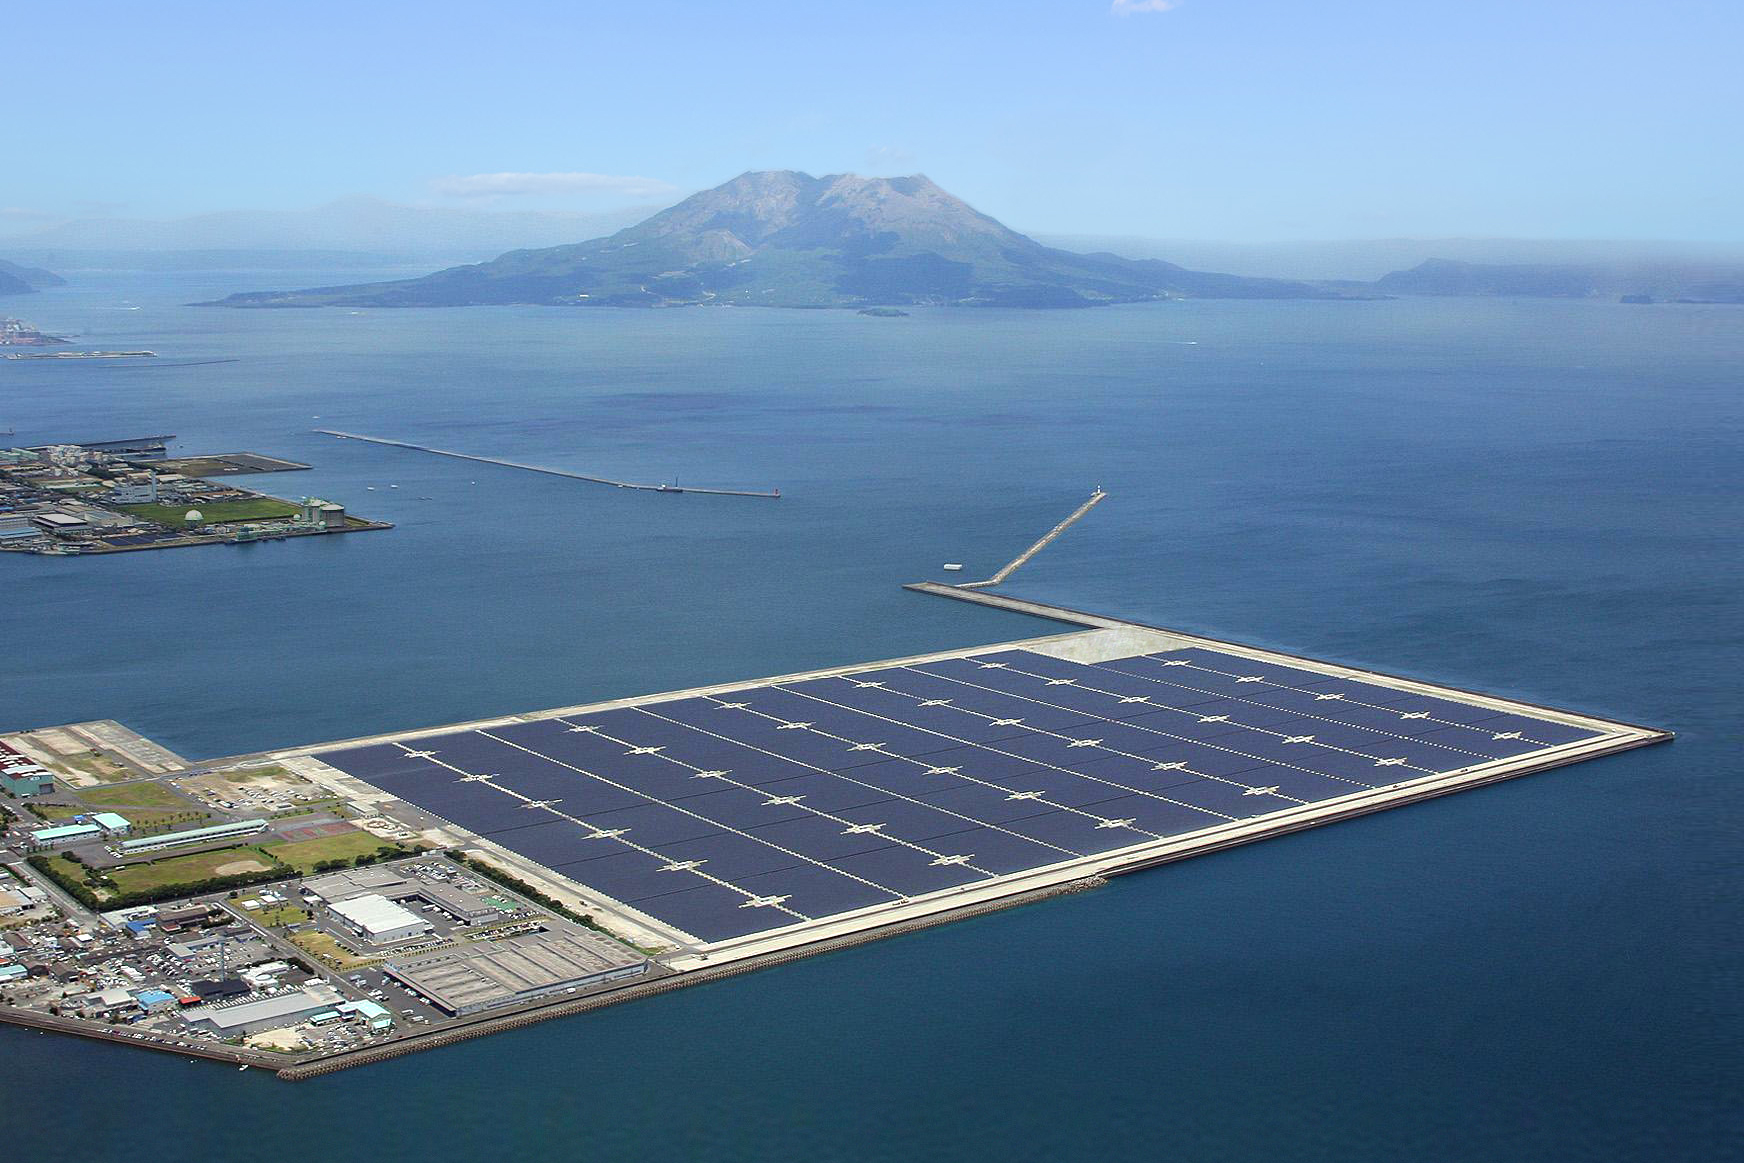 Kyocera solar power plant and Mt. Sakurajima